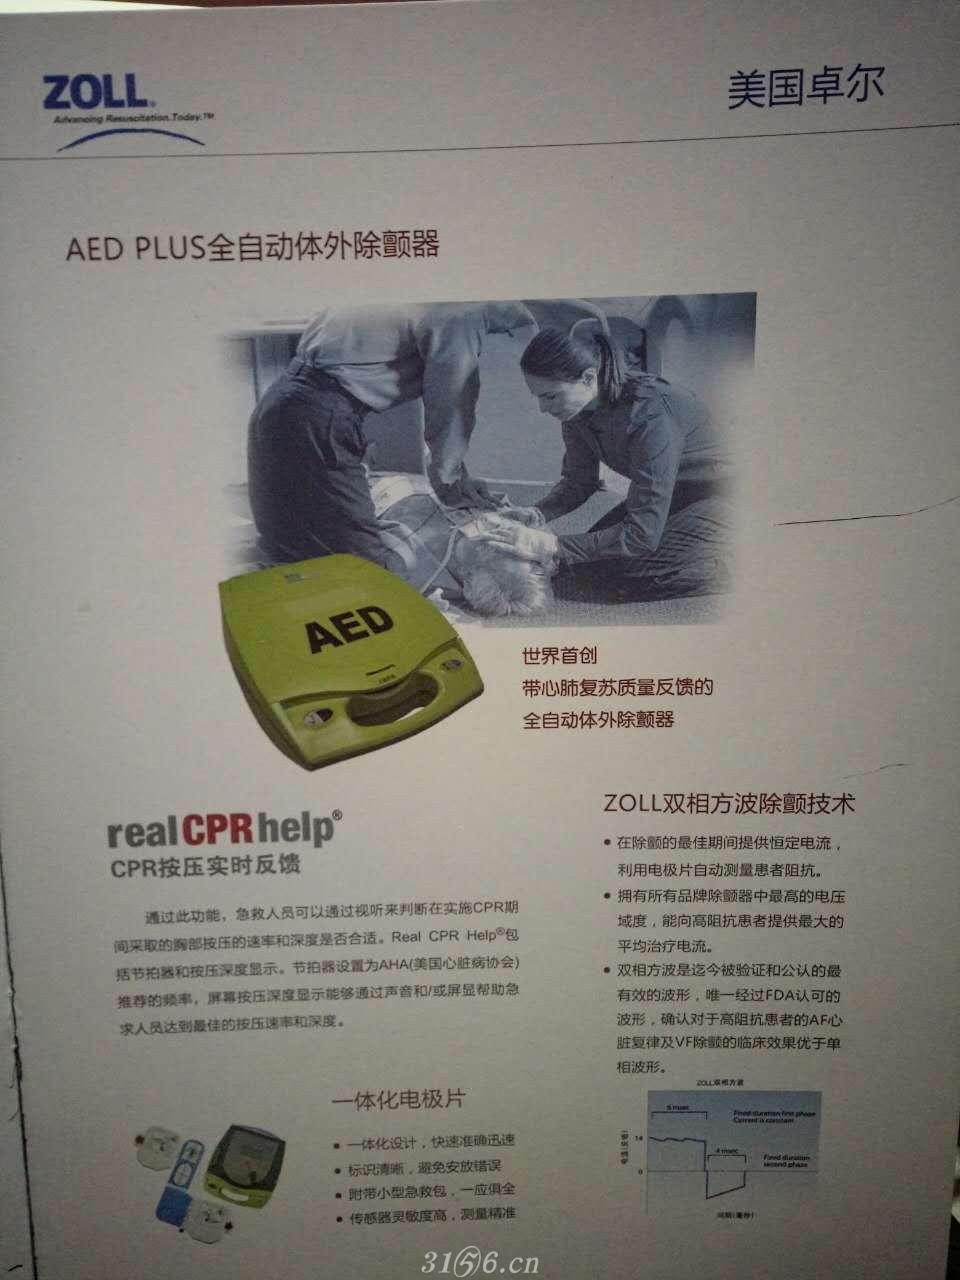 AED PLUS全自动体外除颤器